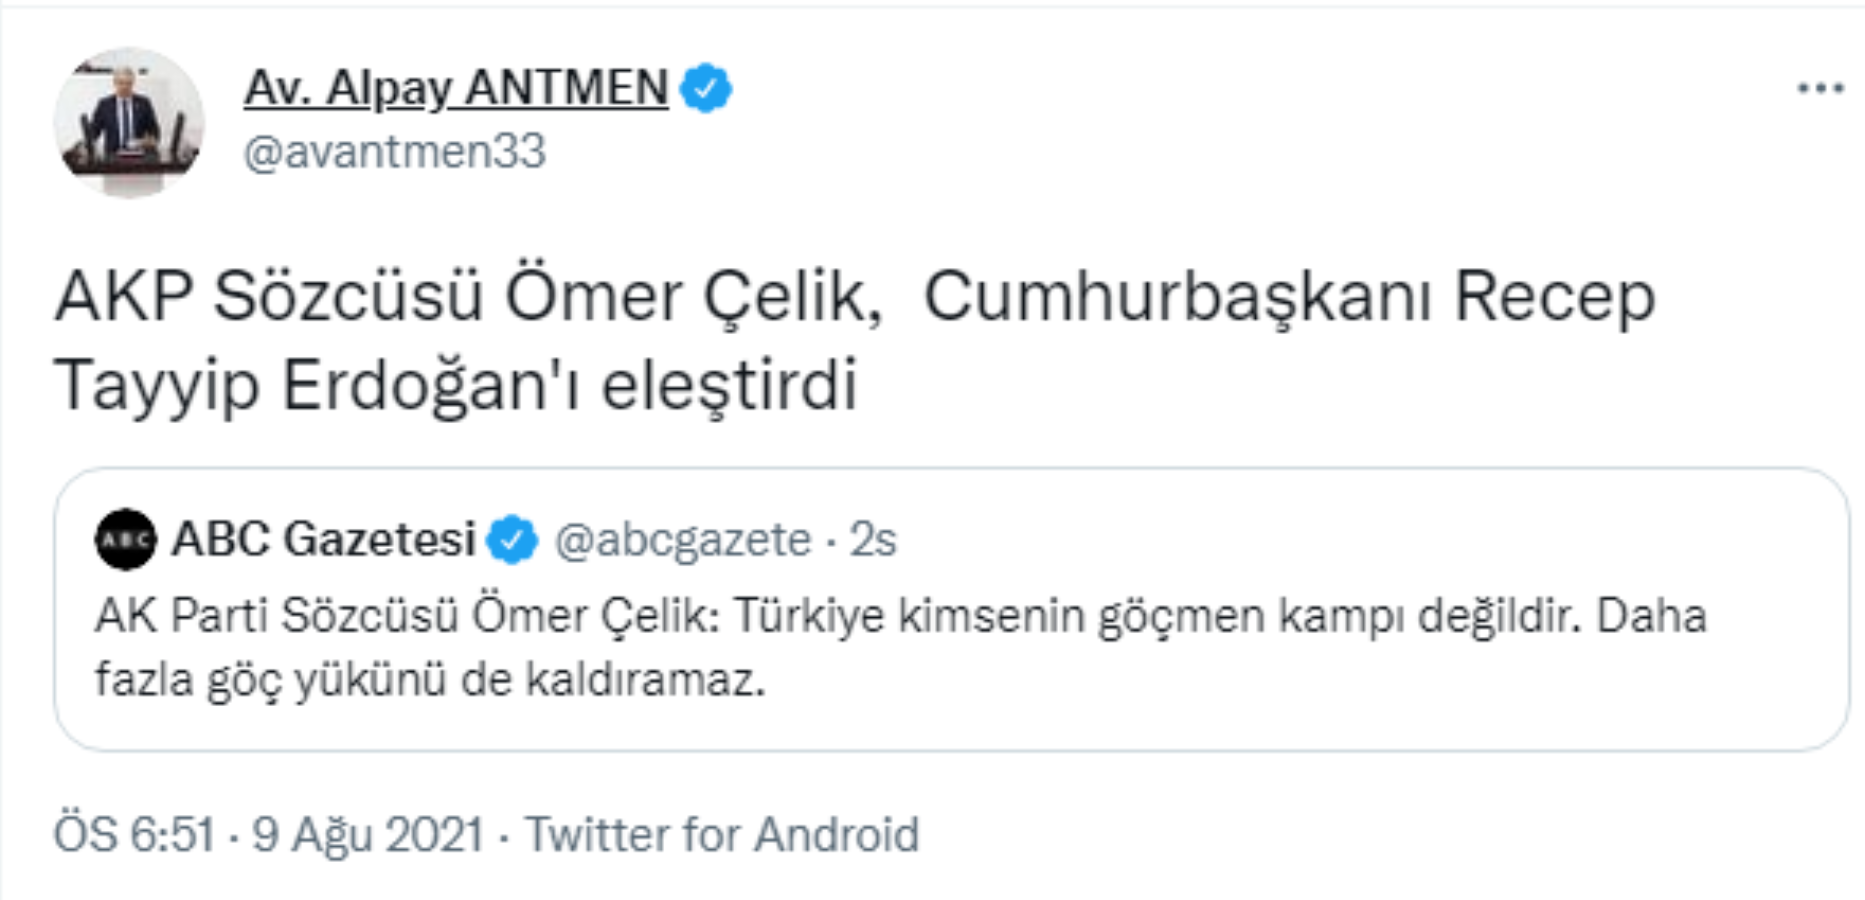 CHP'li Alpay Antmen: "AKP Sözcüsü Ömer Çelik, Erdoğan'ı eleştirdi"